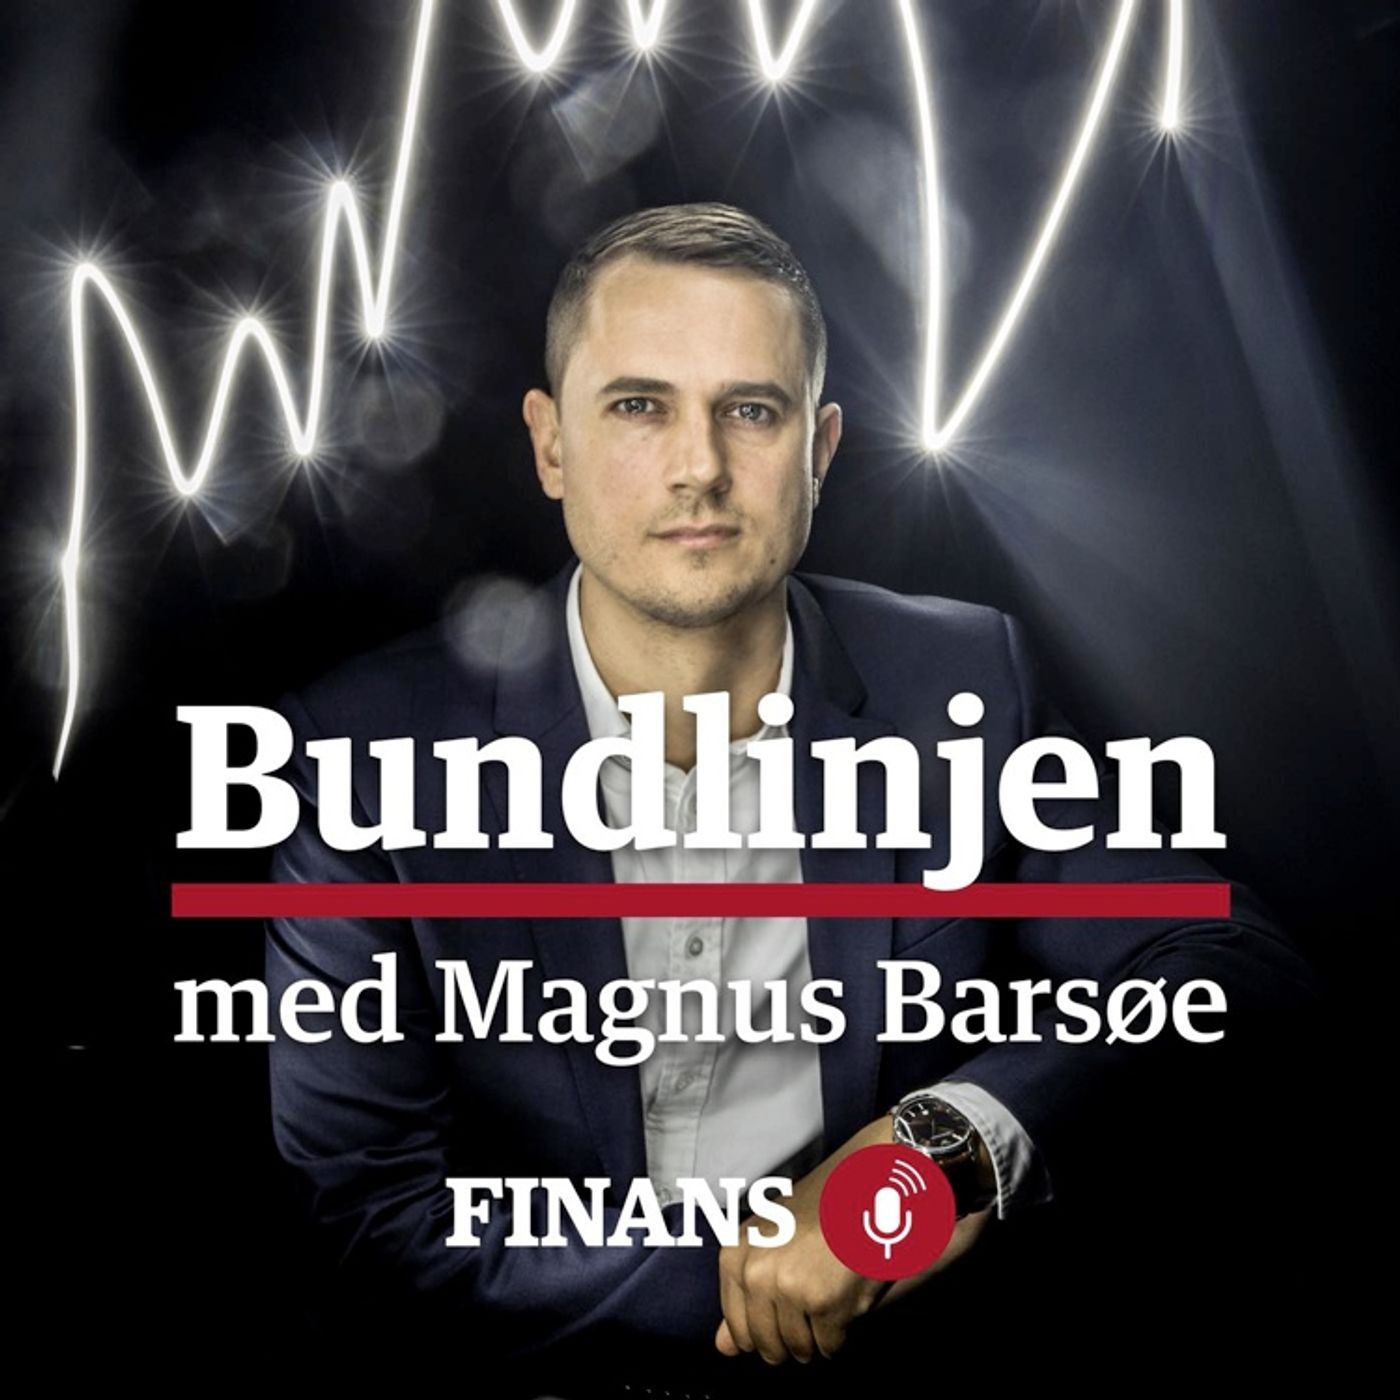 Bundlinjen #38: Danmarks bedste ledelsesteam bag børsraket, Jarlov revser Finanstilsynet og elkongernes voksende magt